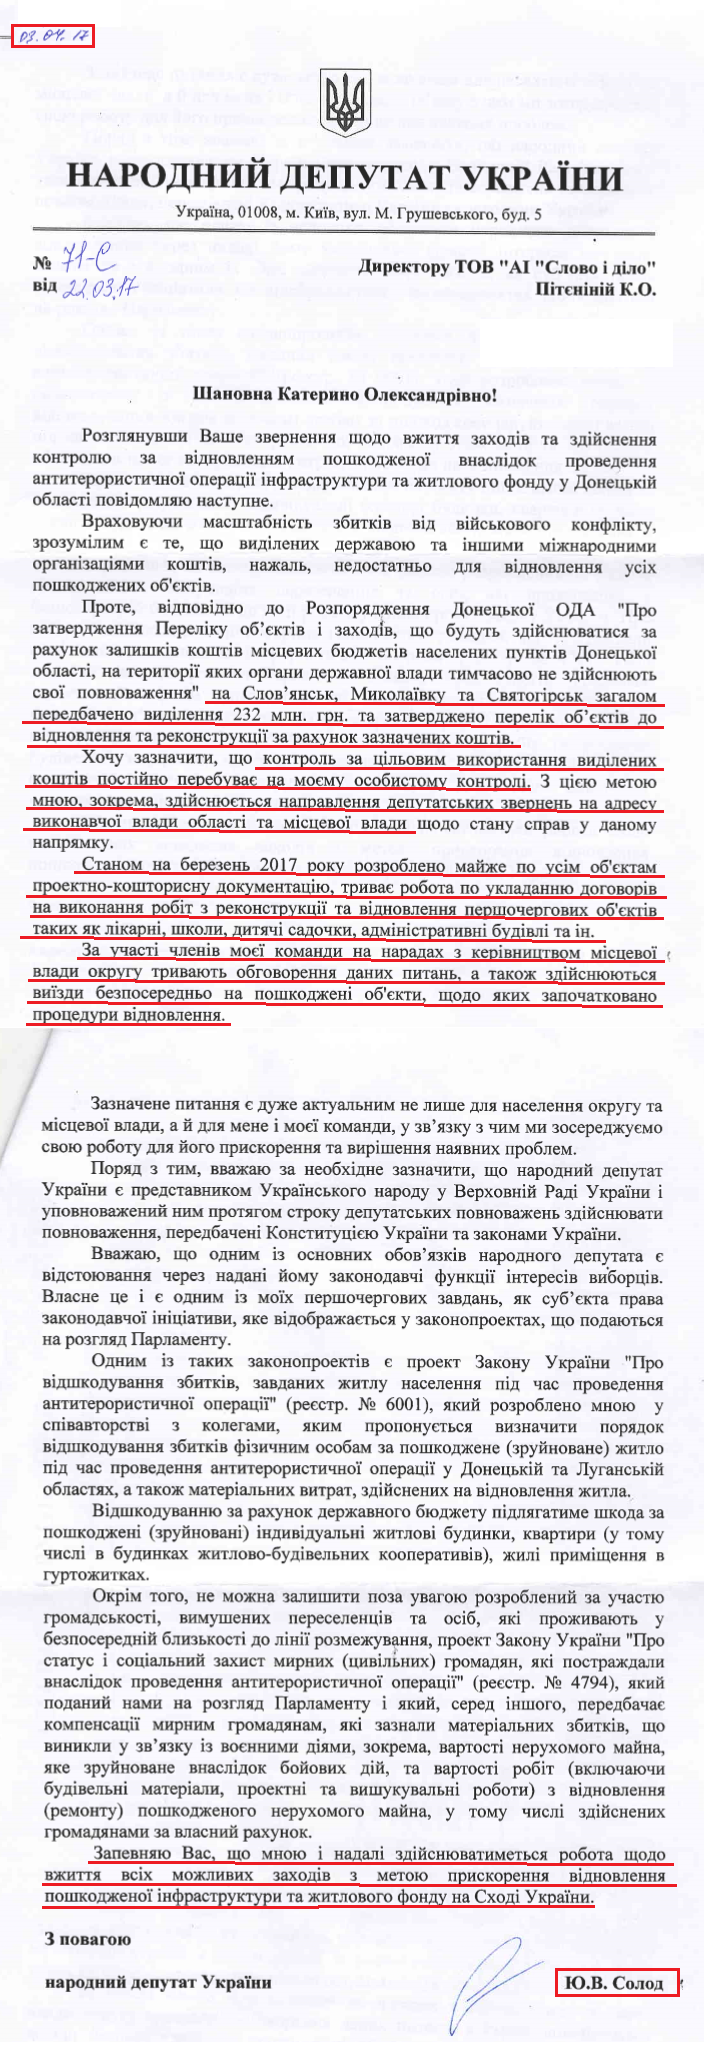 Лист народного депутата України Юрія Солода від 3 квітня 2017 року